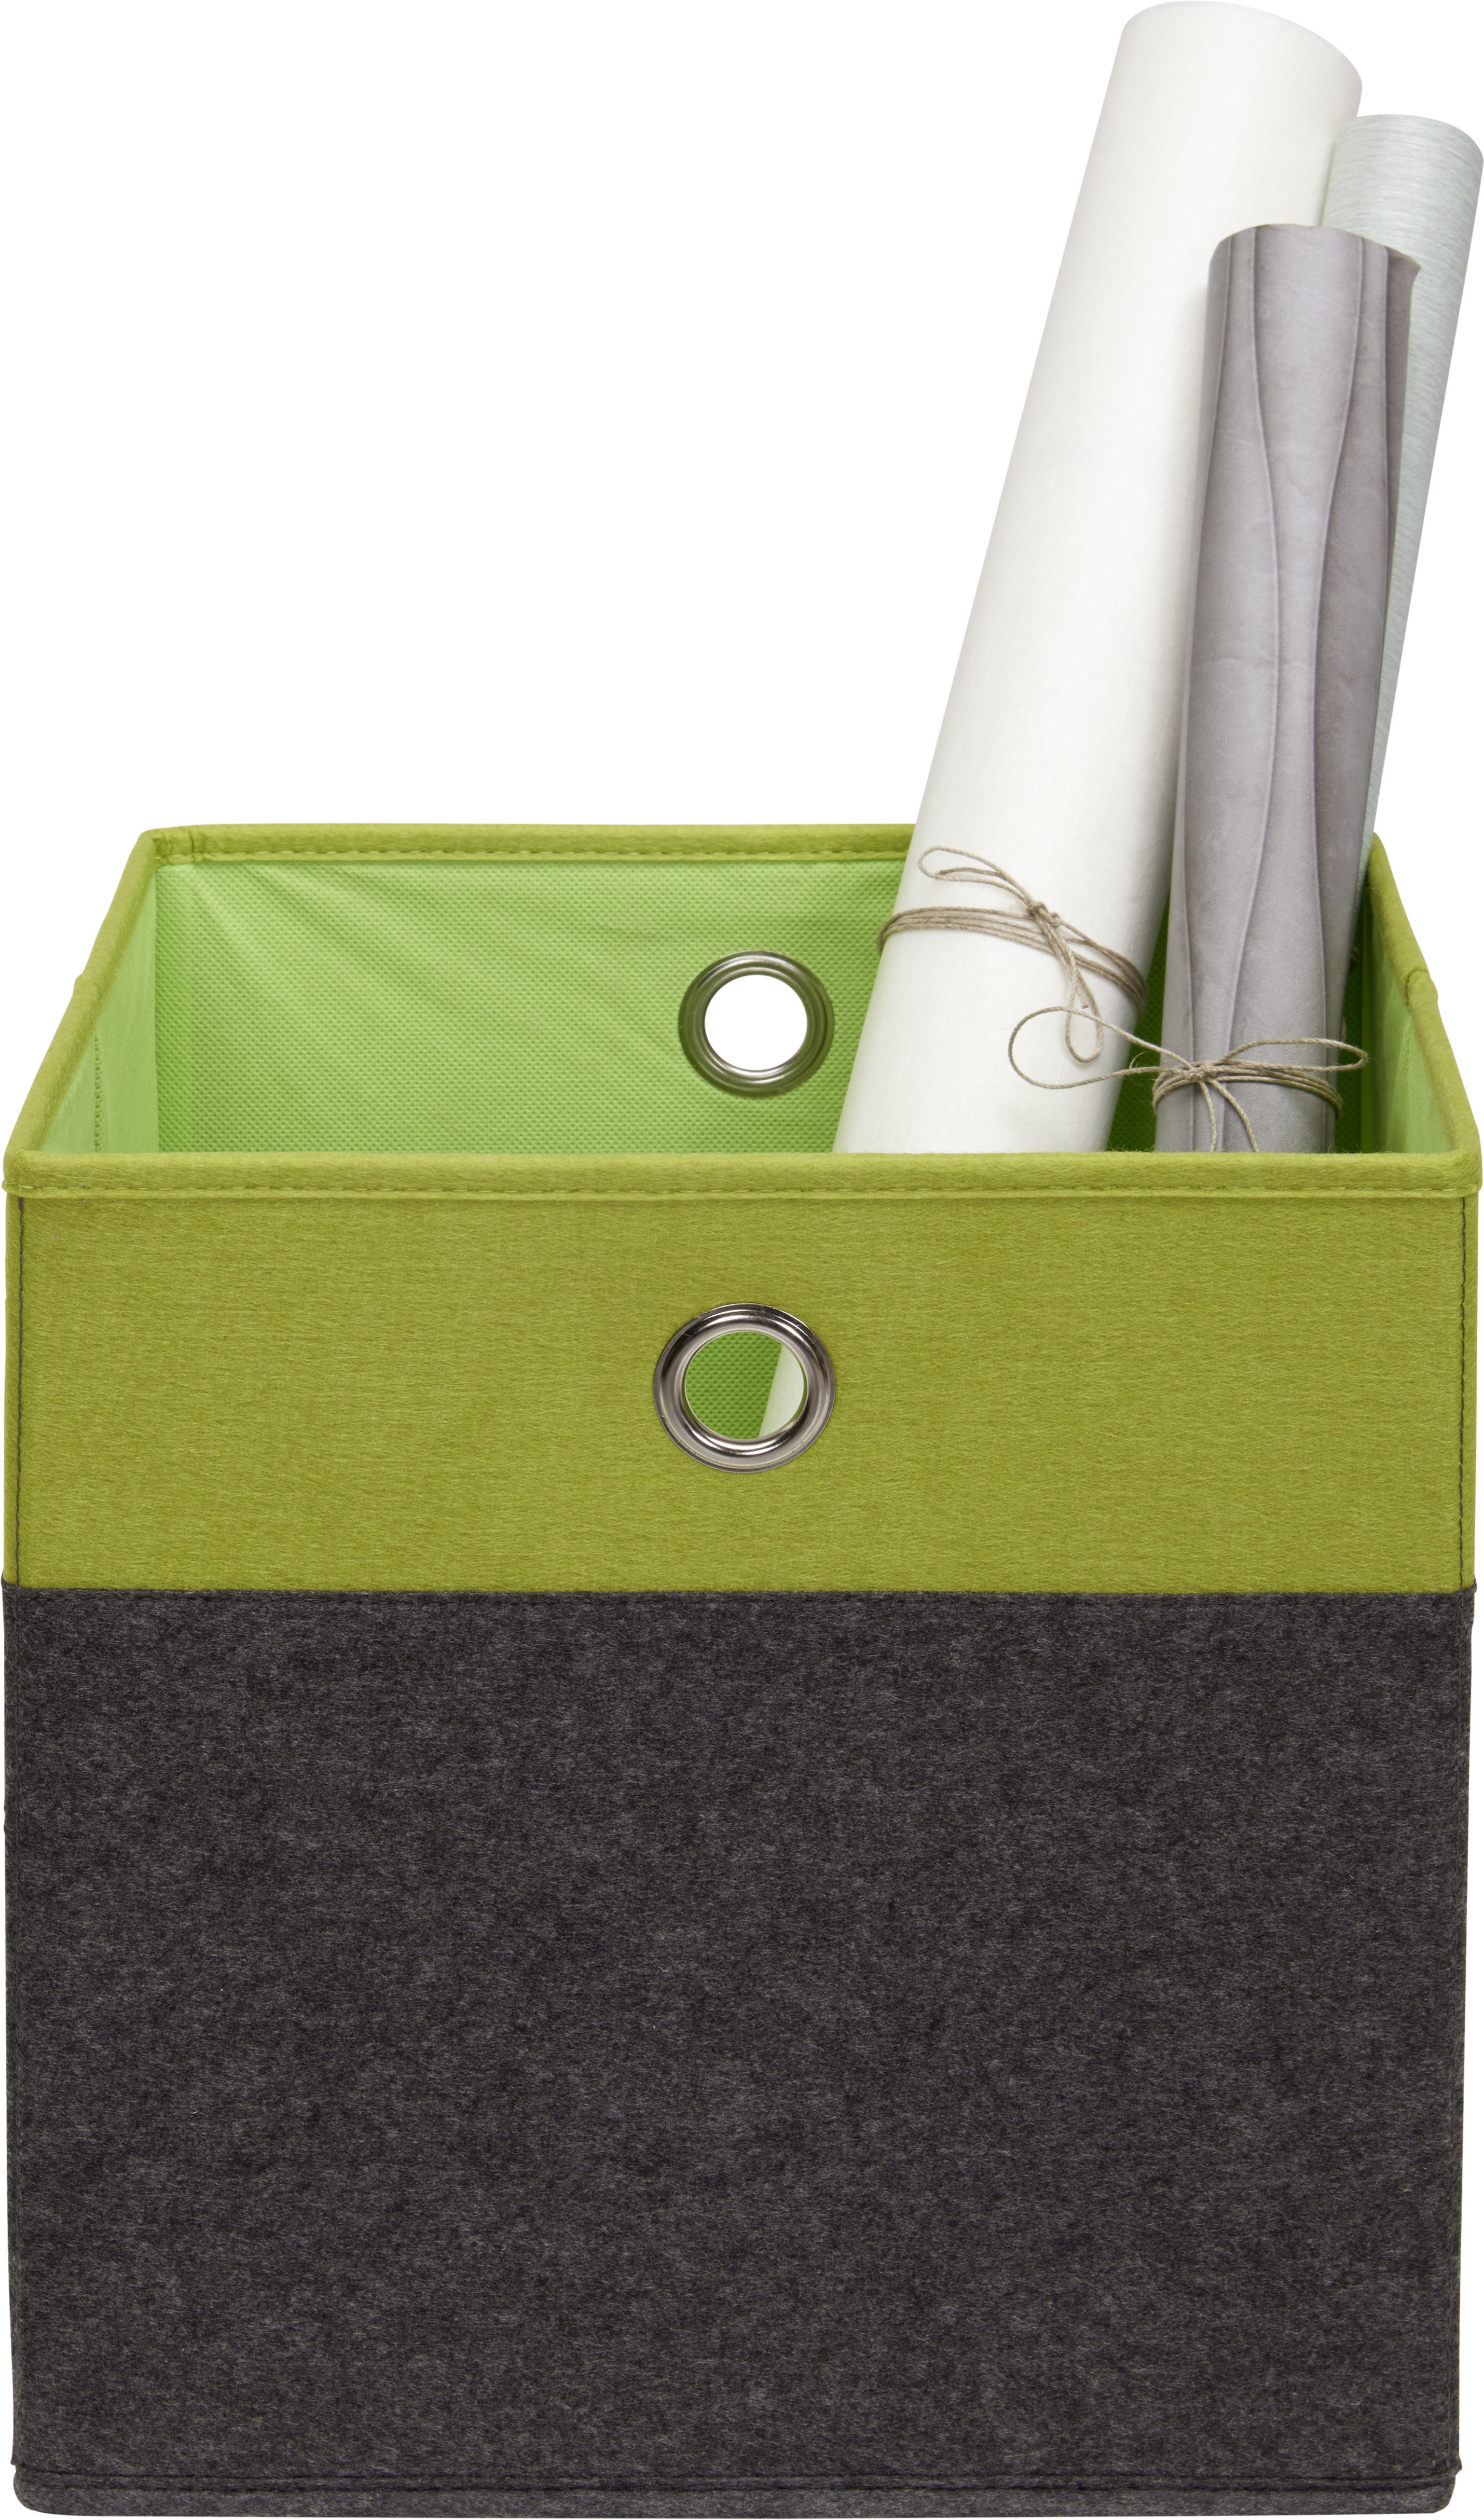 SKLADACÍ BOX, kov, textil, kartón, 32/32/32 cm - zelená/antracitová, Design, kartón/kov (32/32/32cm) - Carryhome